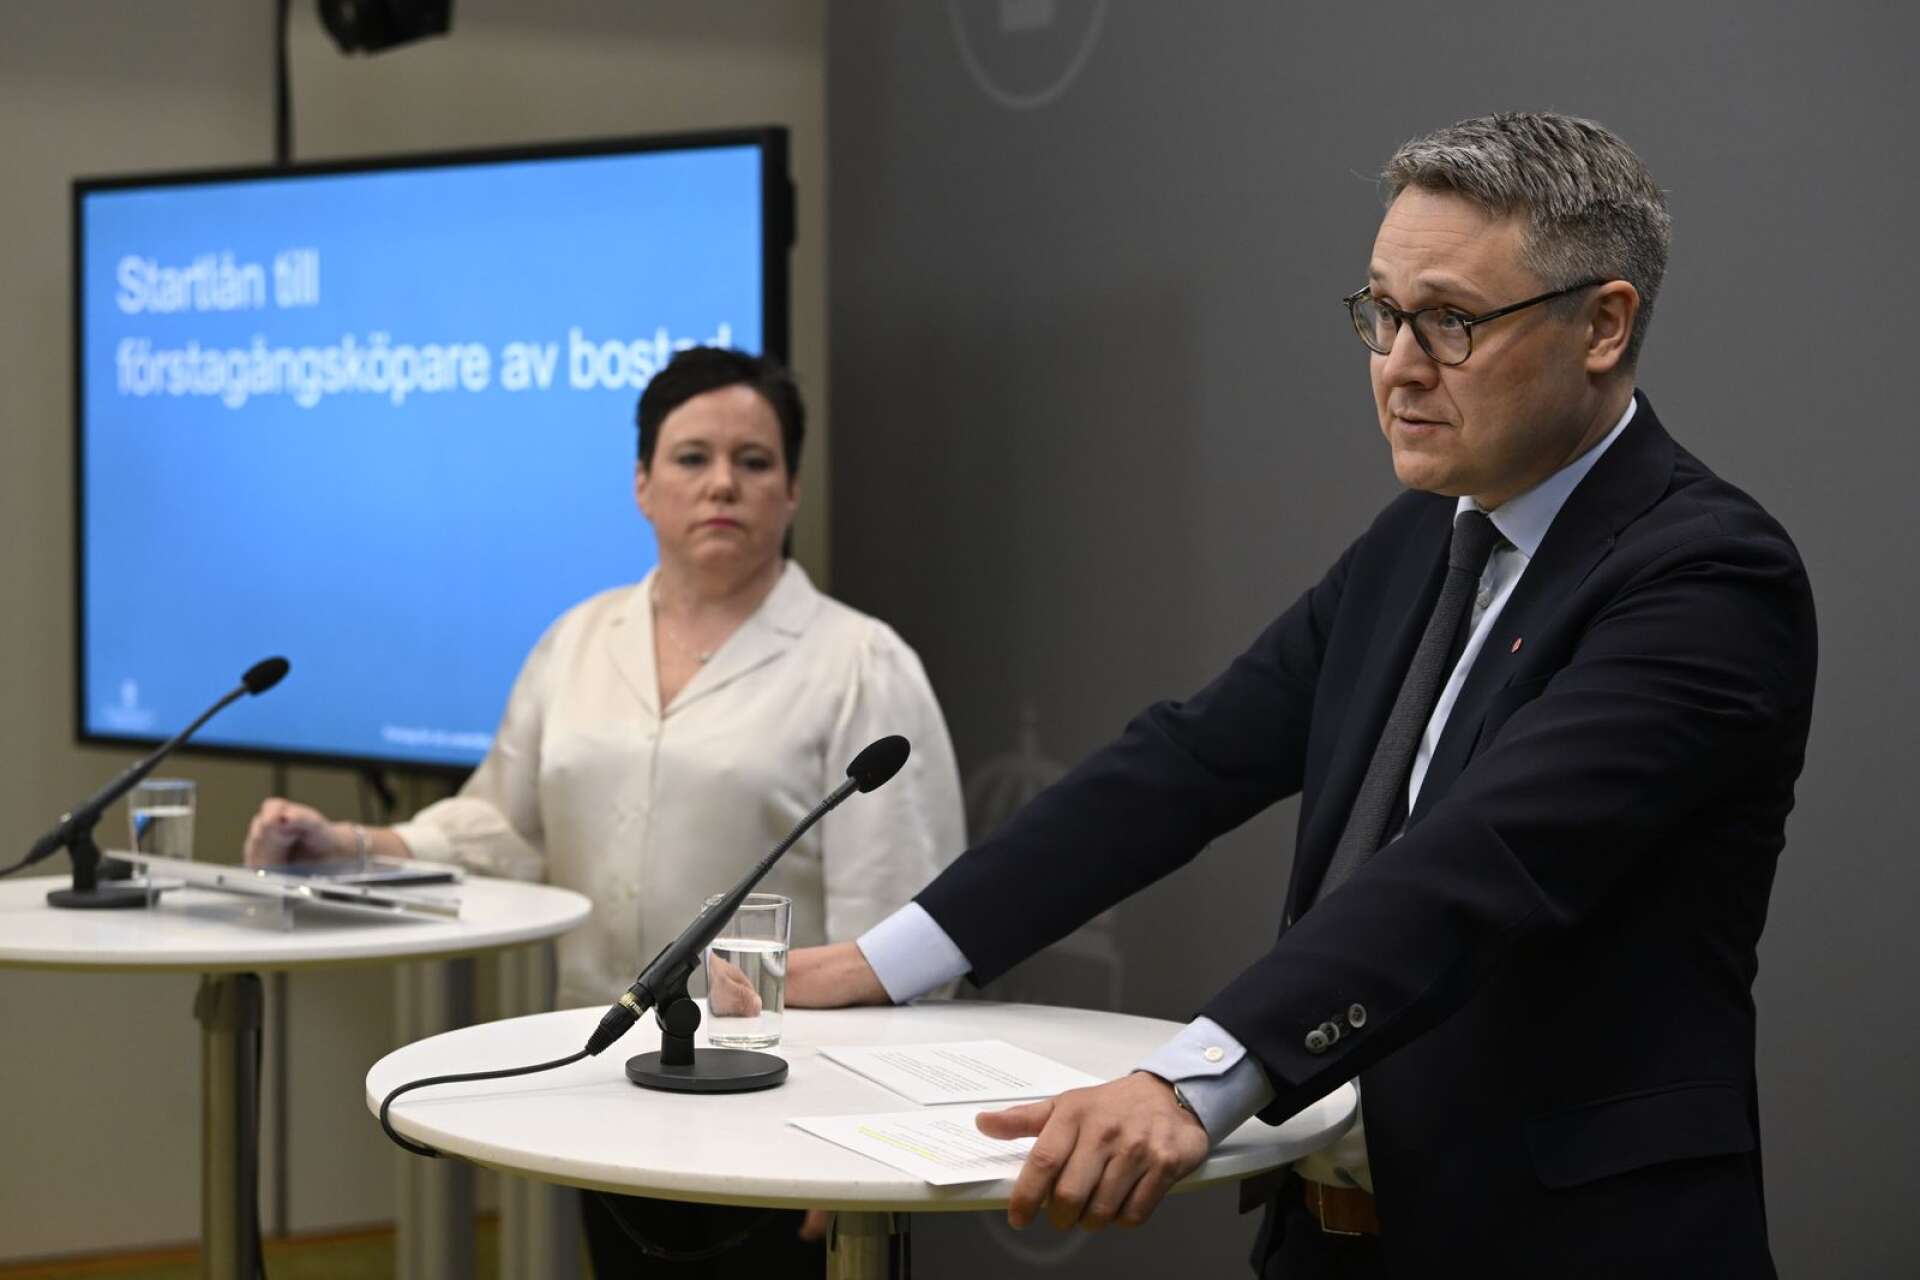 Bostadsminister Johan Danielsson (S) tar emot betänkande om startlån till förstagångsköpare av bostad och håller pressträff med utredare Eva Nordström.